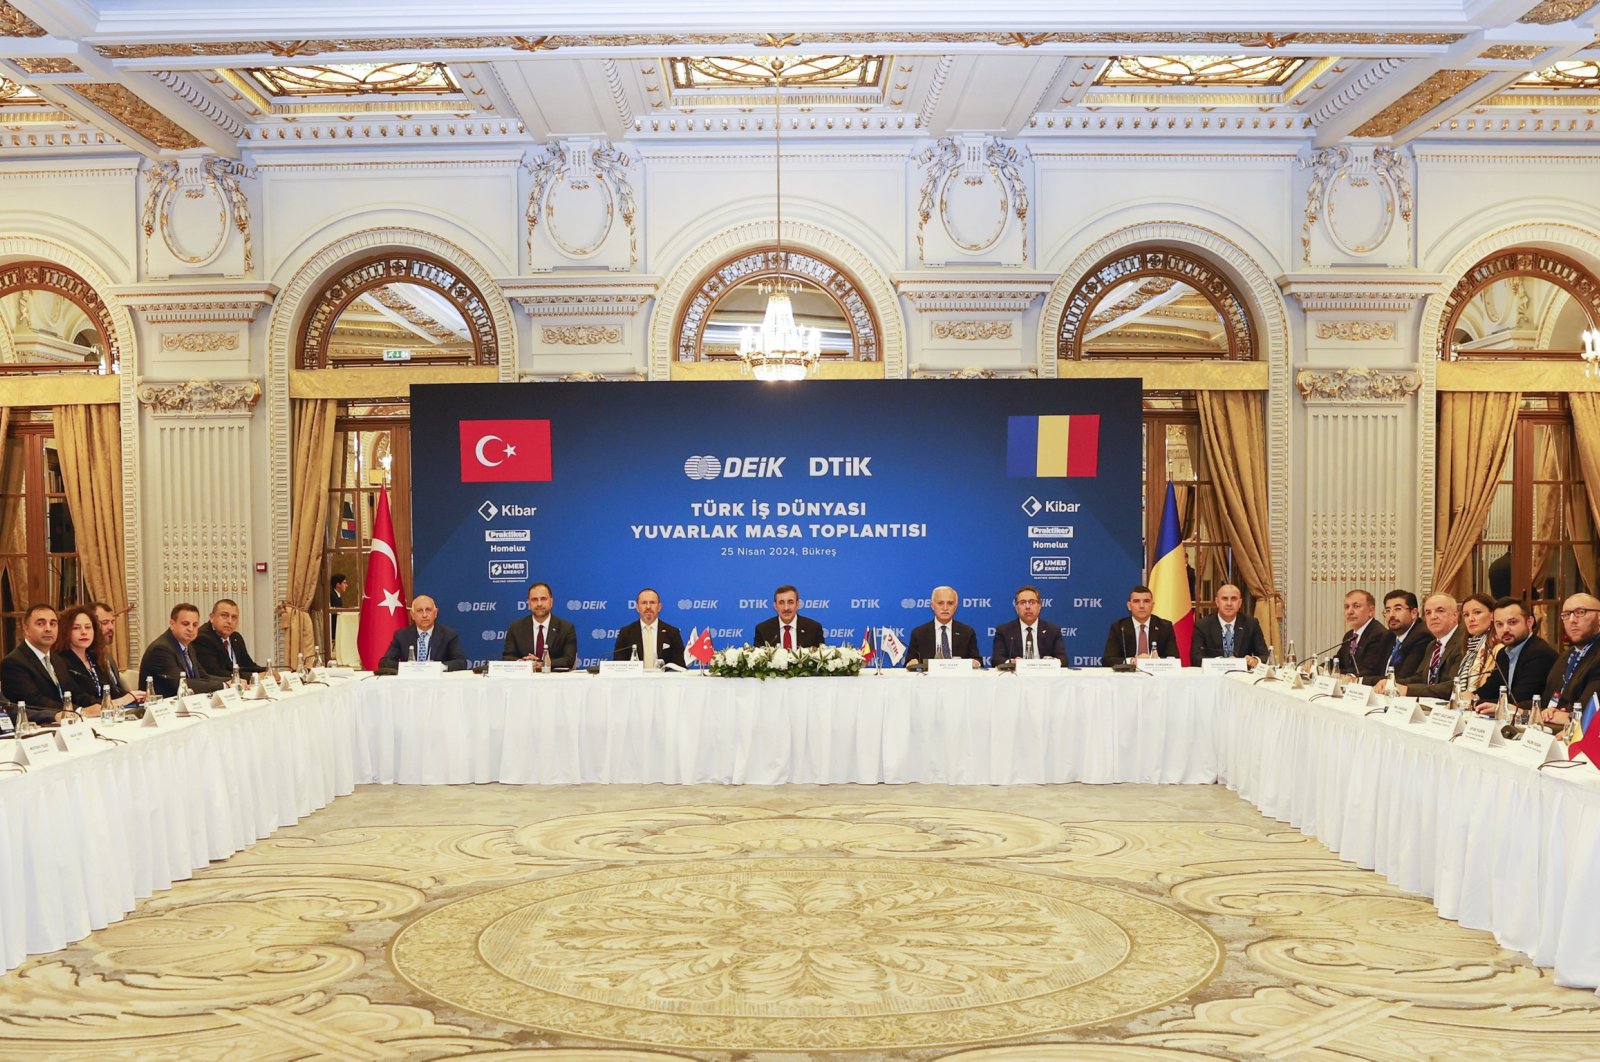 Türkiye promovează investiții sporite în România și comerț puternic